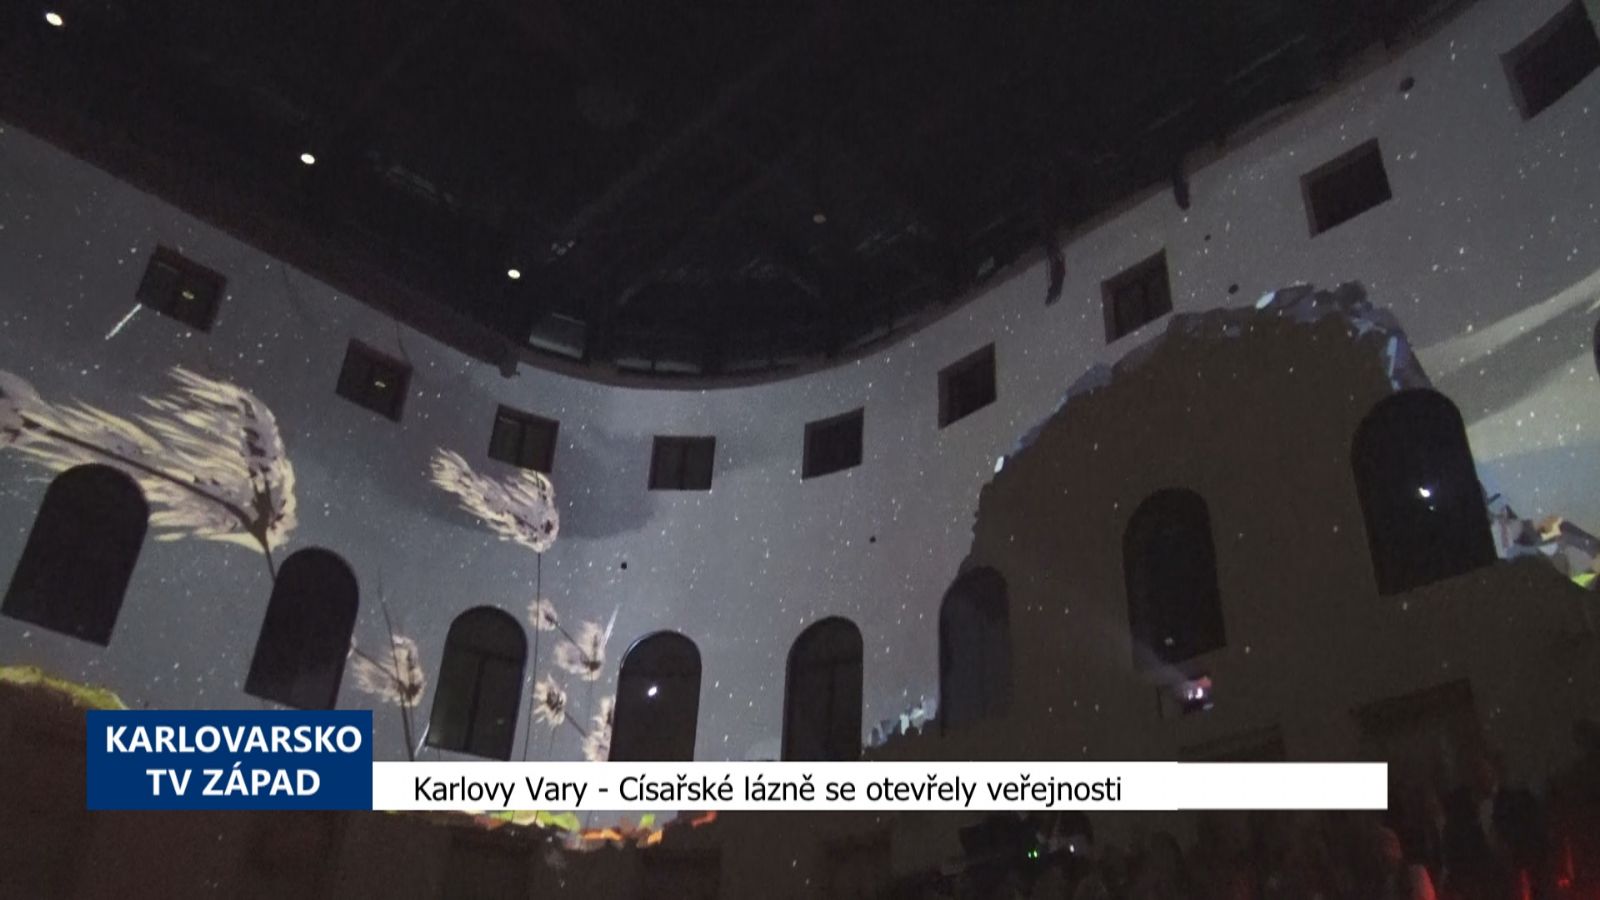 Karlovy Vary: Císařské lázně se otevřely veřejnosti (TV Západ)